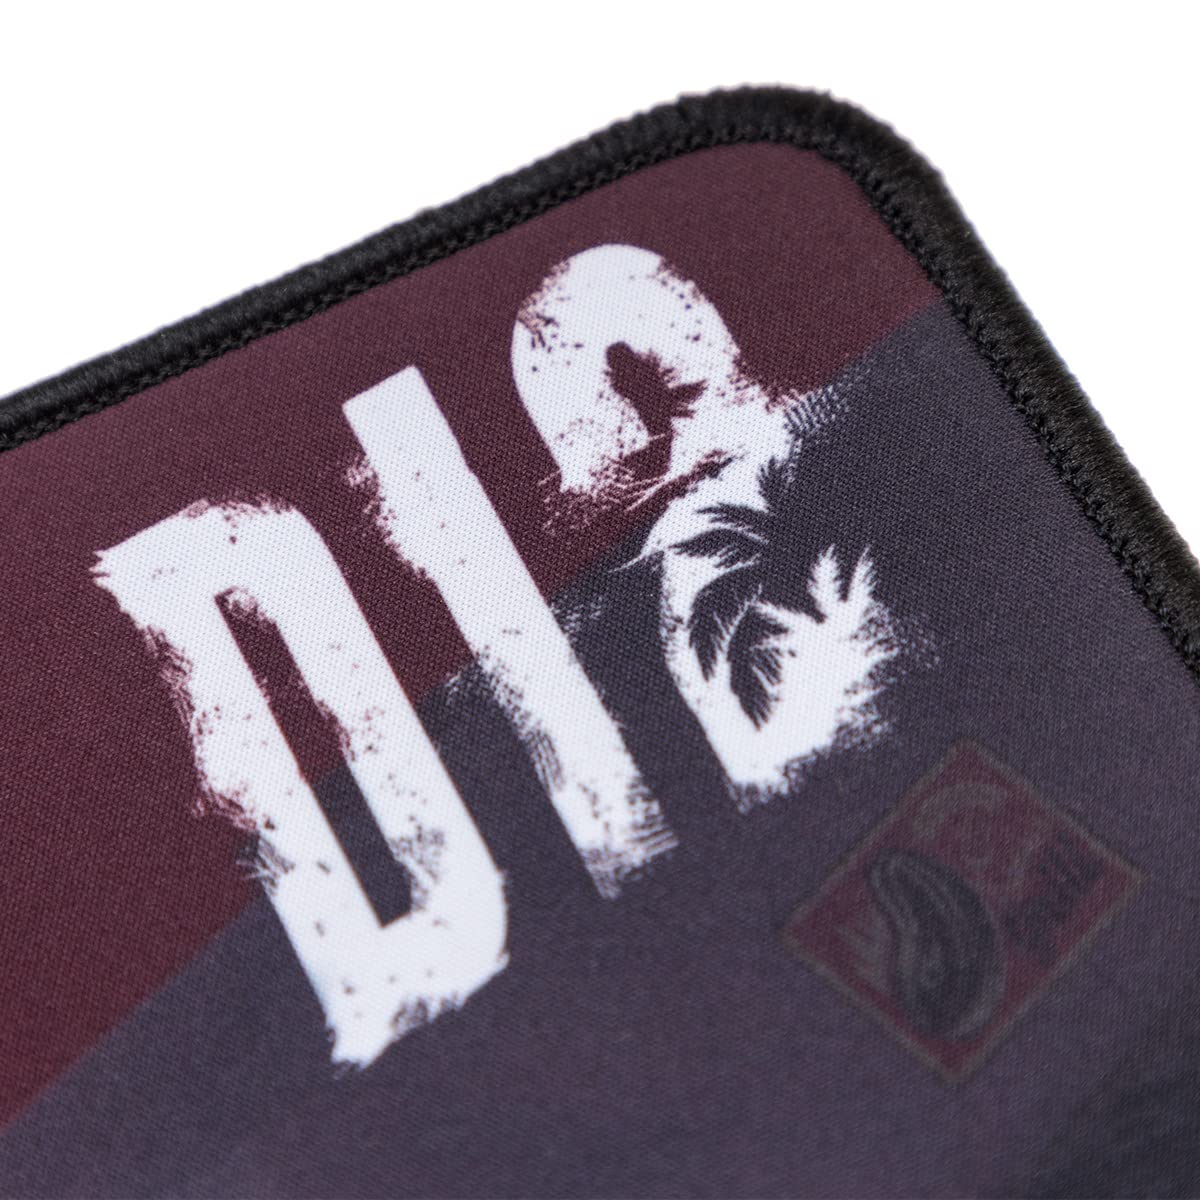 Dead Island 2 Mousepad "Amy" ca. 80x35 cm offiz. lizenziert